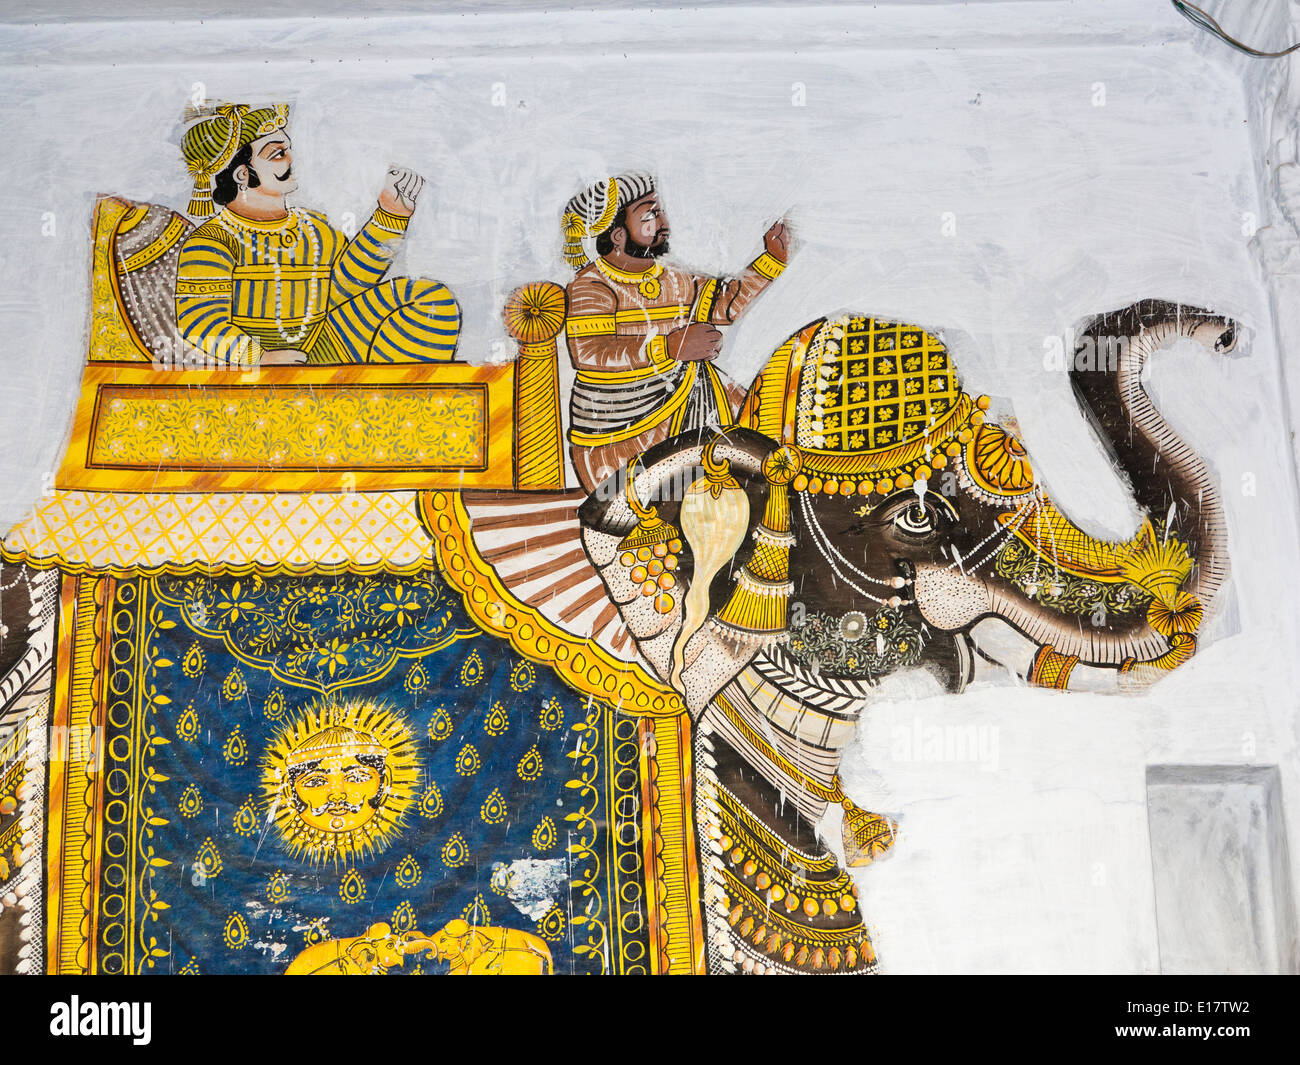 L'Inde, Rajasthan, Udaipur, la peinture murale traditionnelle de Rajput hommes sur caparisioned avec éléphant symbole surya Banque D'Images